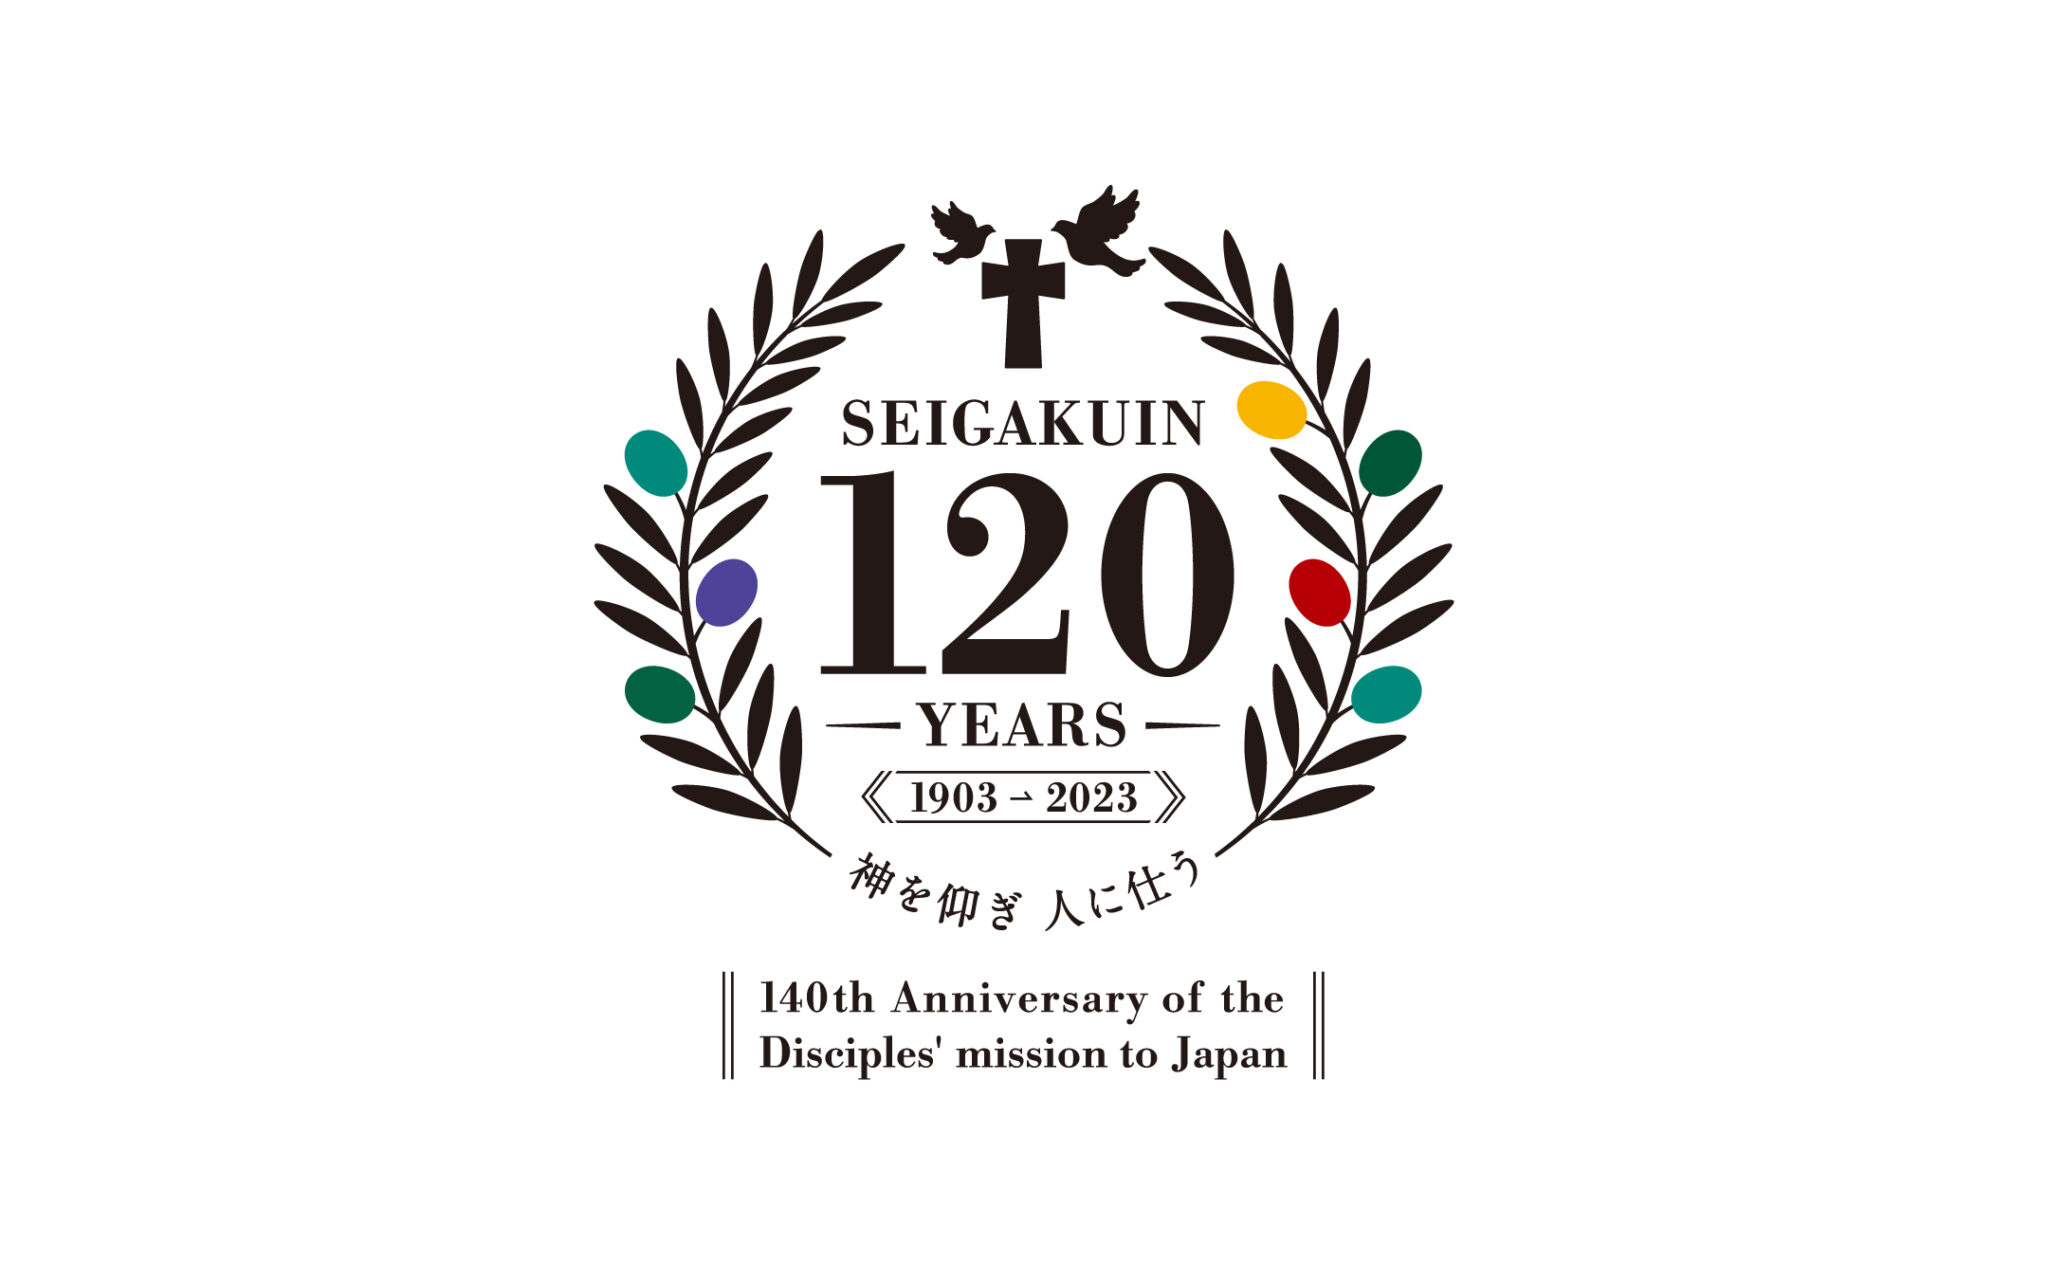 学校法人聖学院120周年ロゴ  